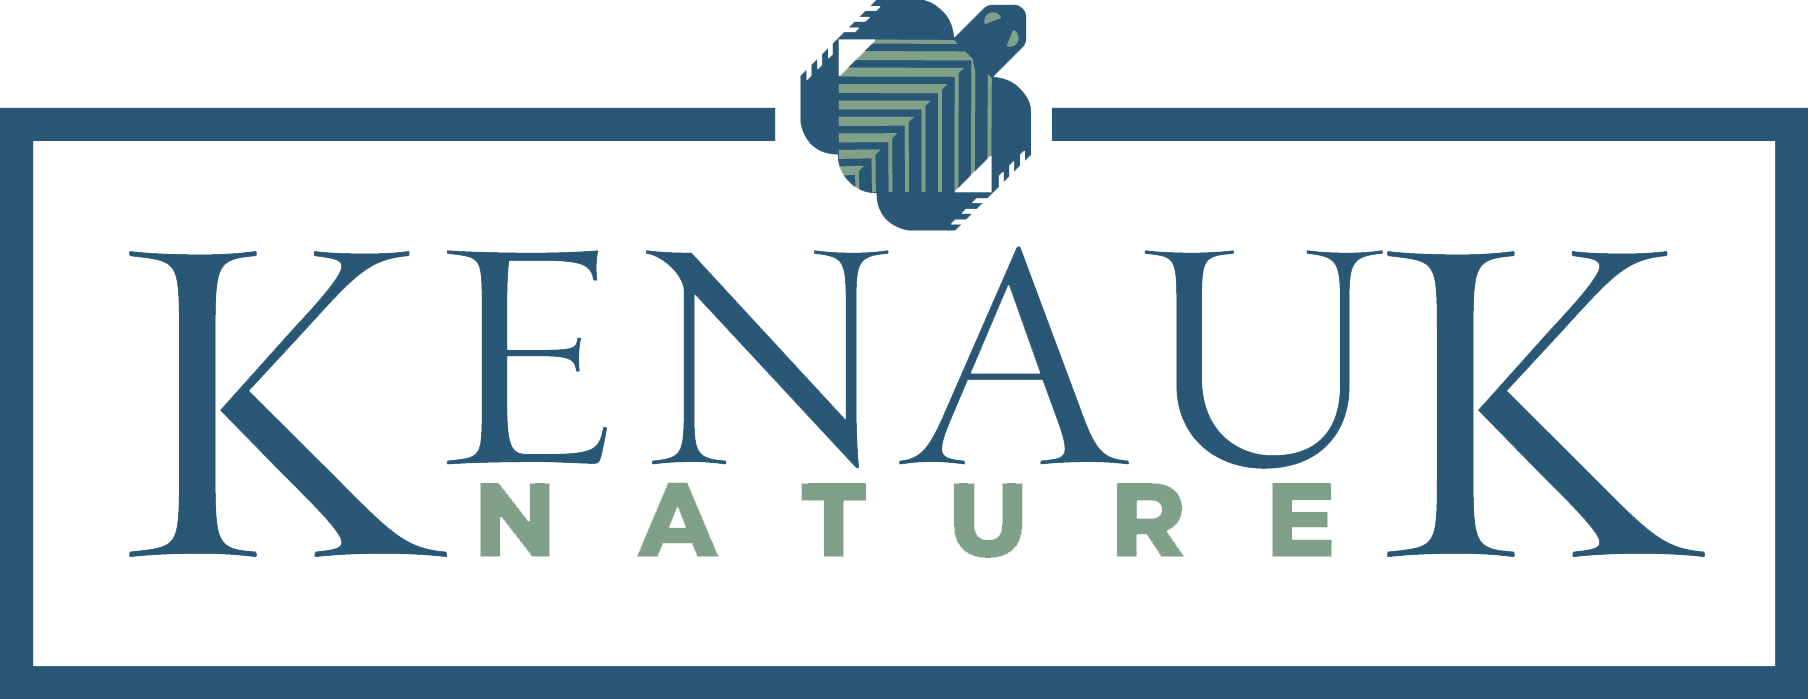 Kenauk Nature Logo Transparent.png